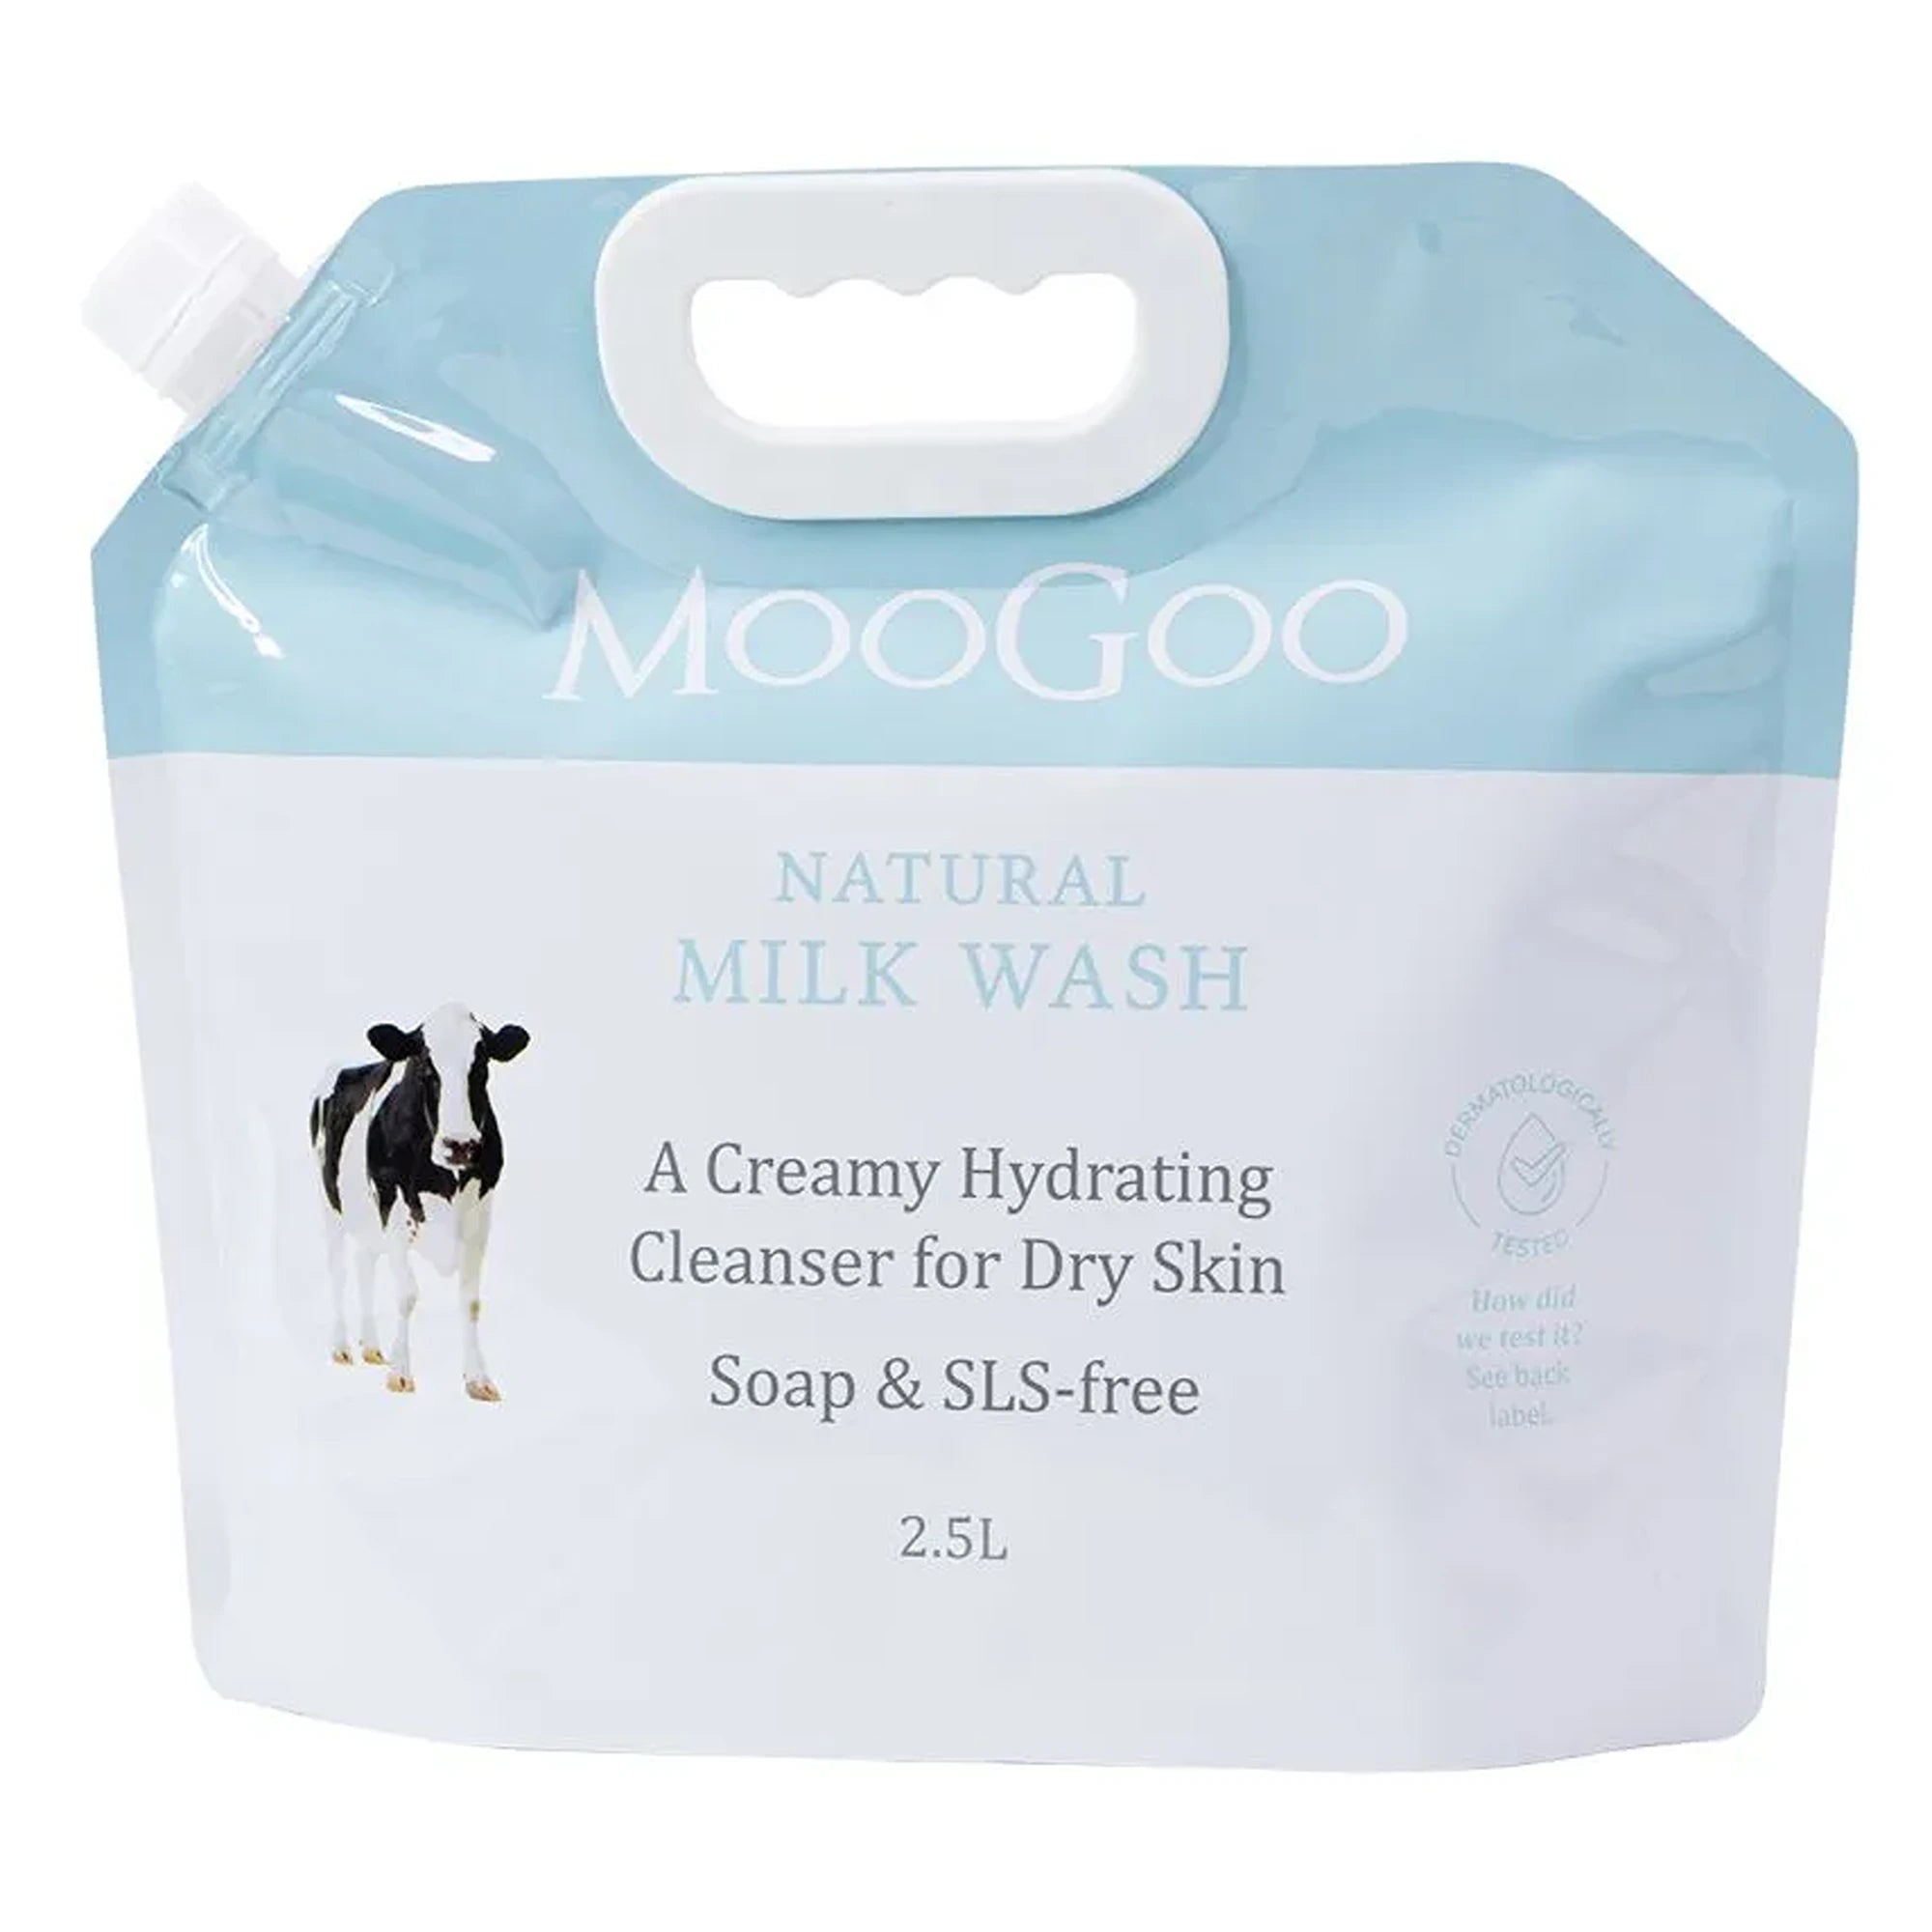 Moogoo Milk Wash 2.5L